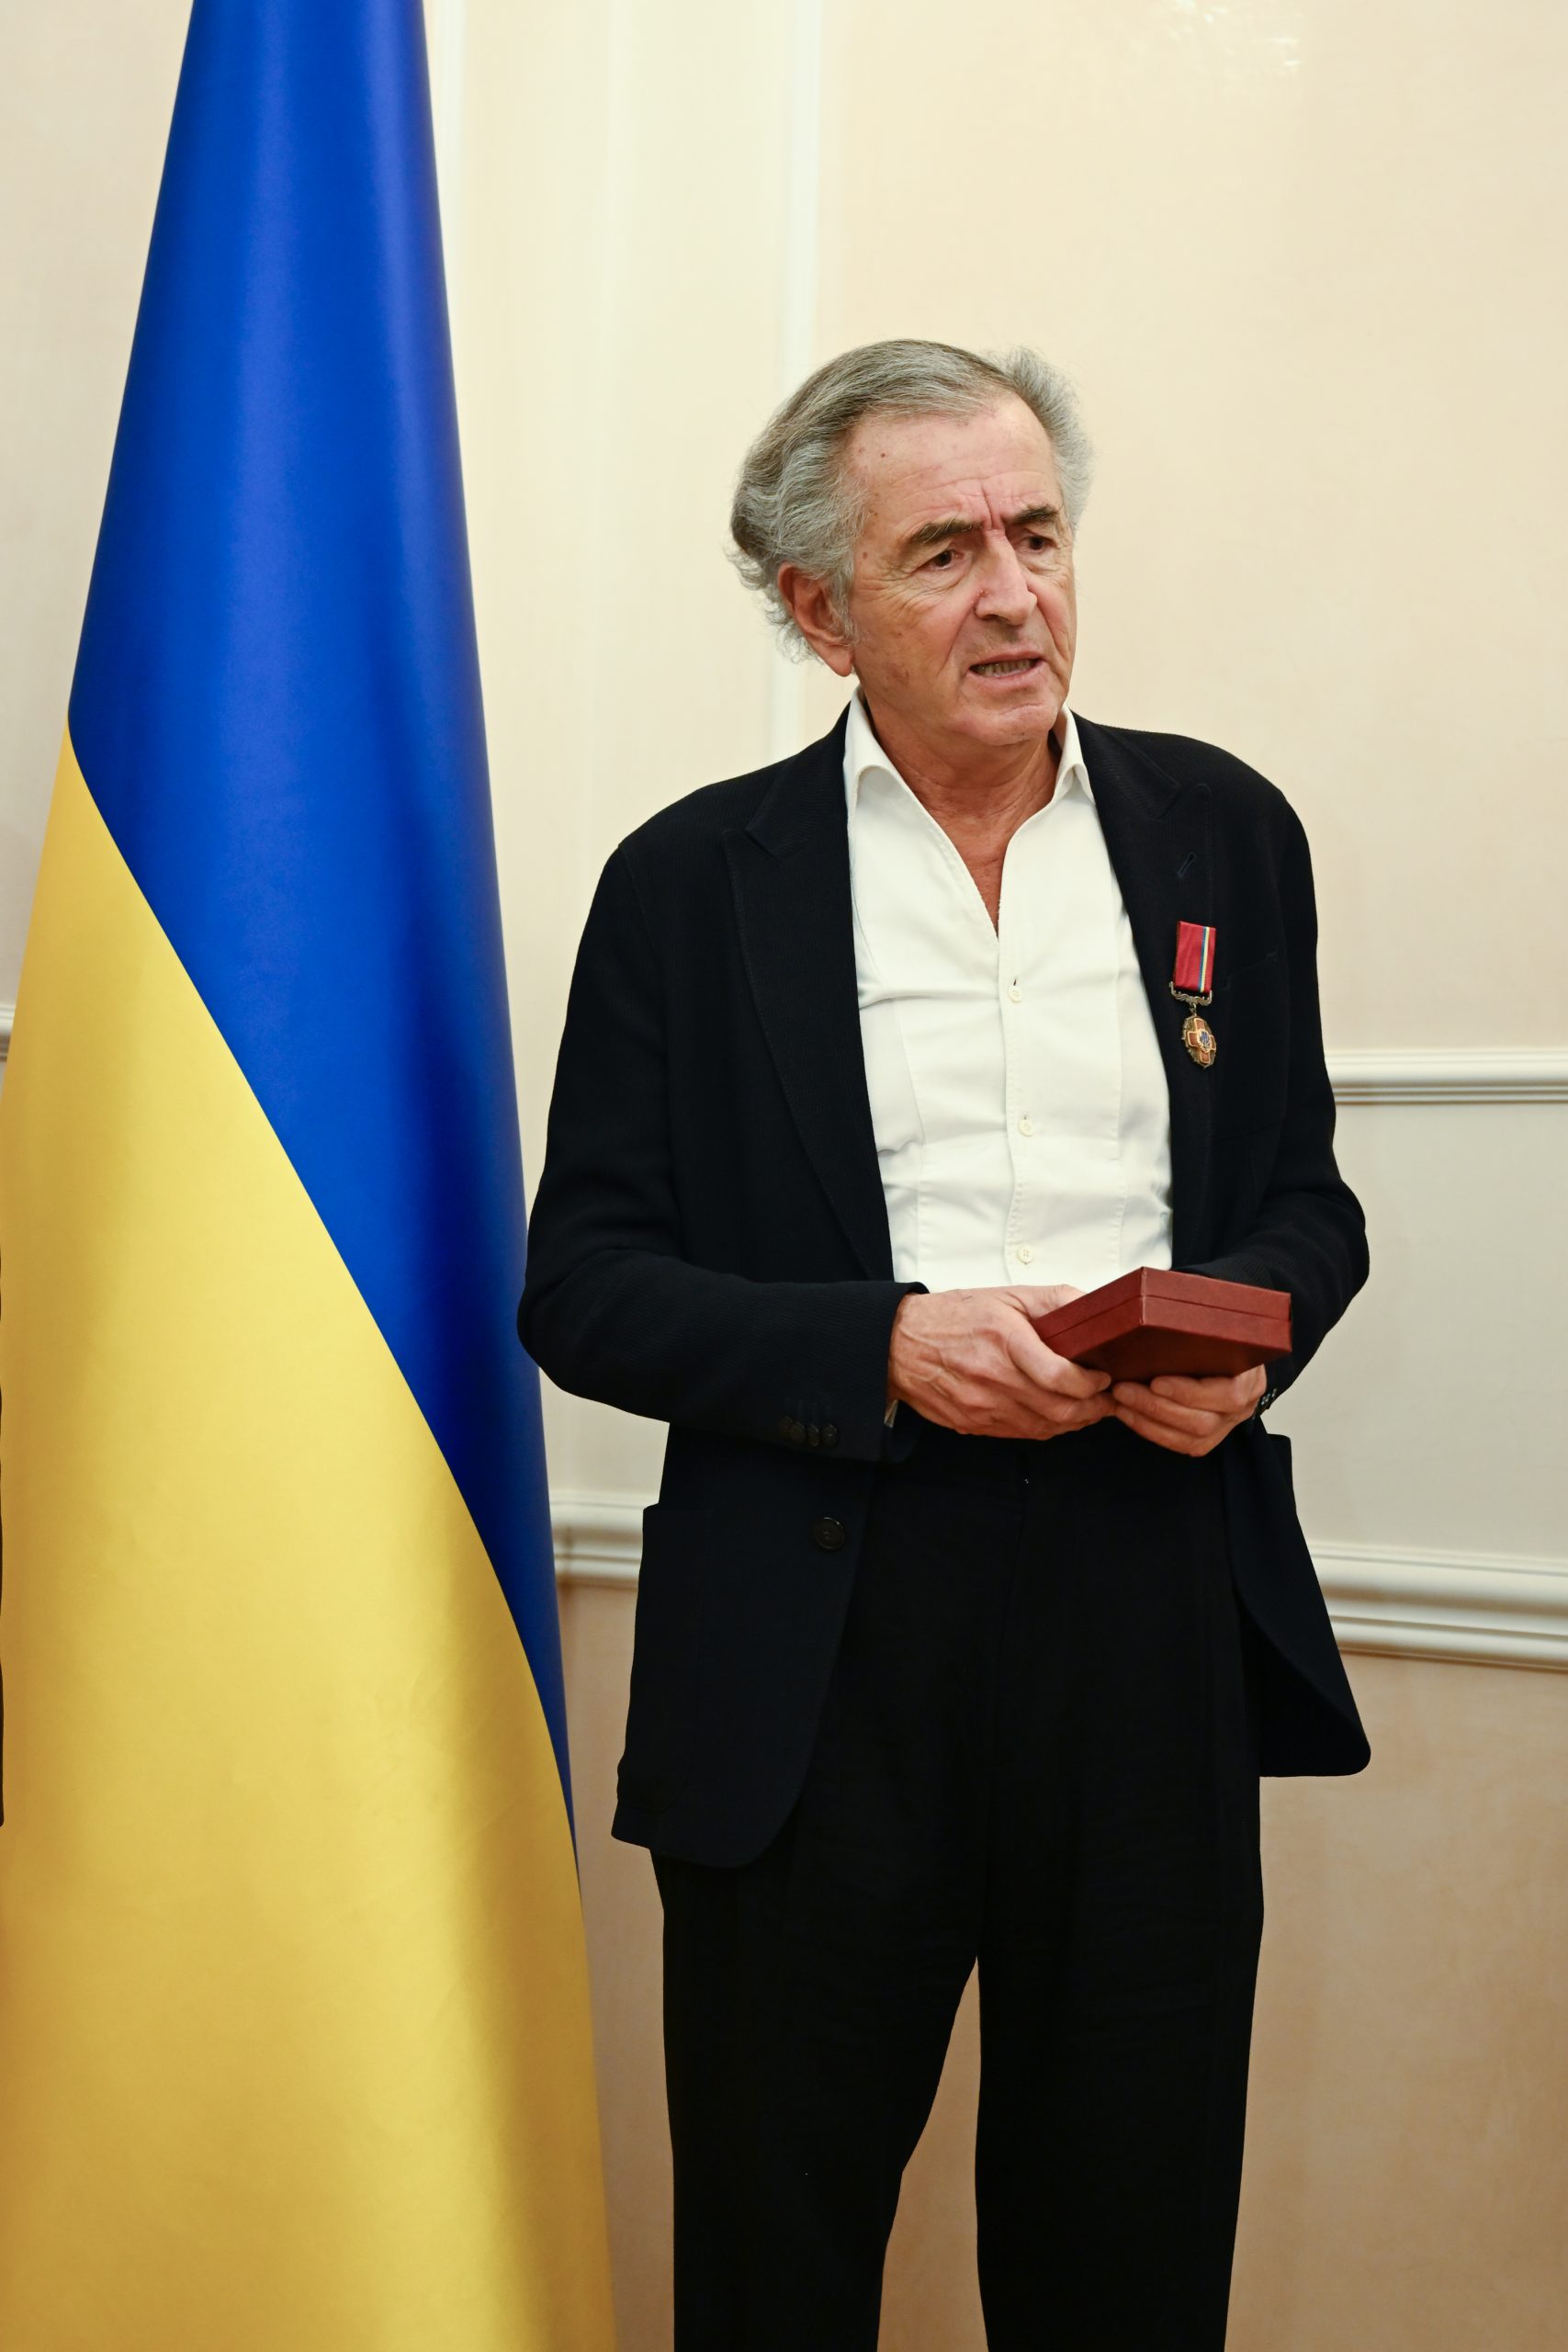 BHL vient de recevoir l'insigne de Chevalier de l'Ordre du Mérite d'Ukraine. Il prononce un discours devant un drapeau ukrainien